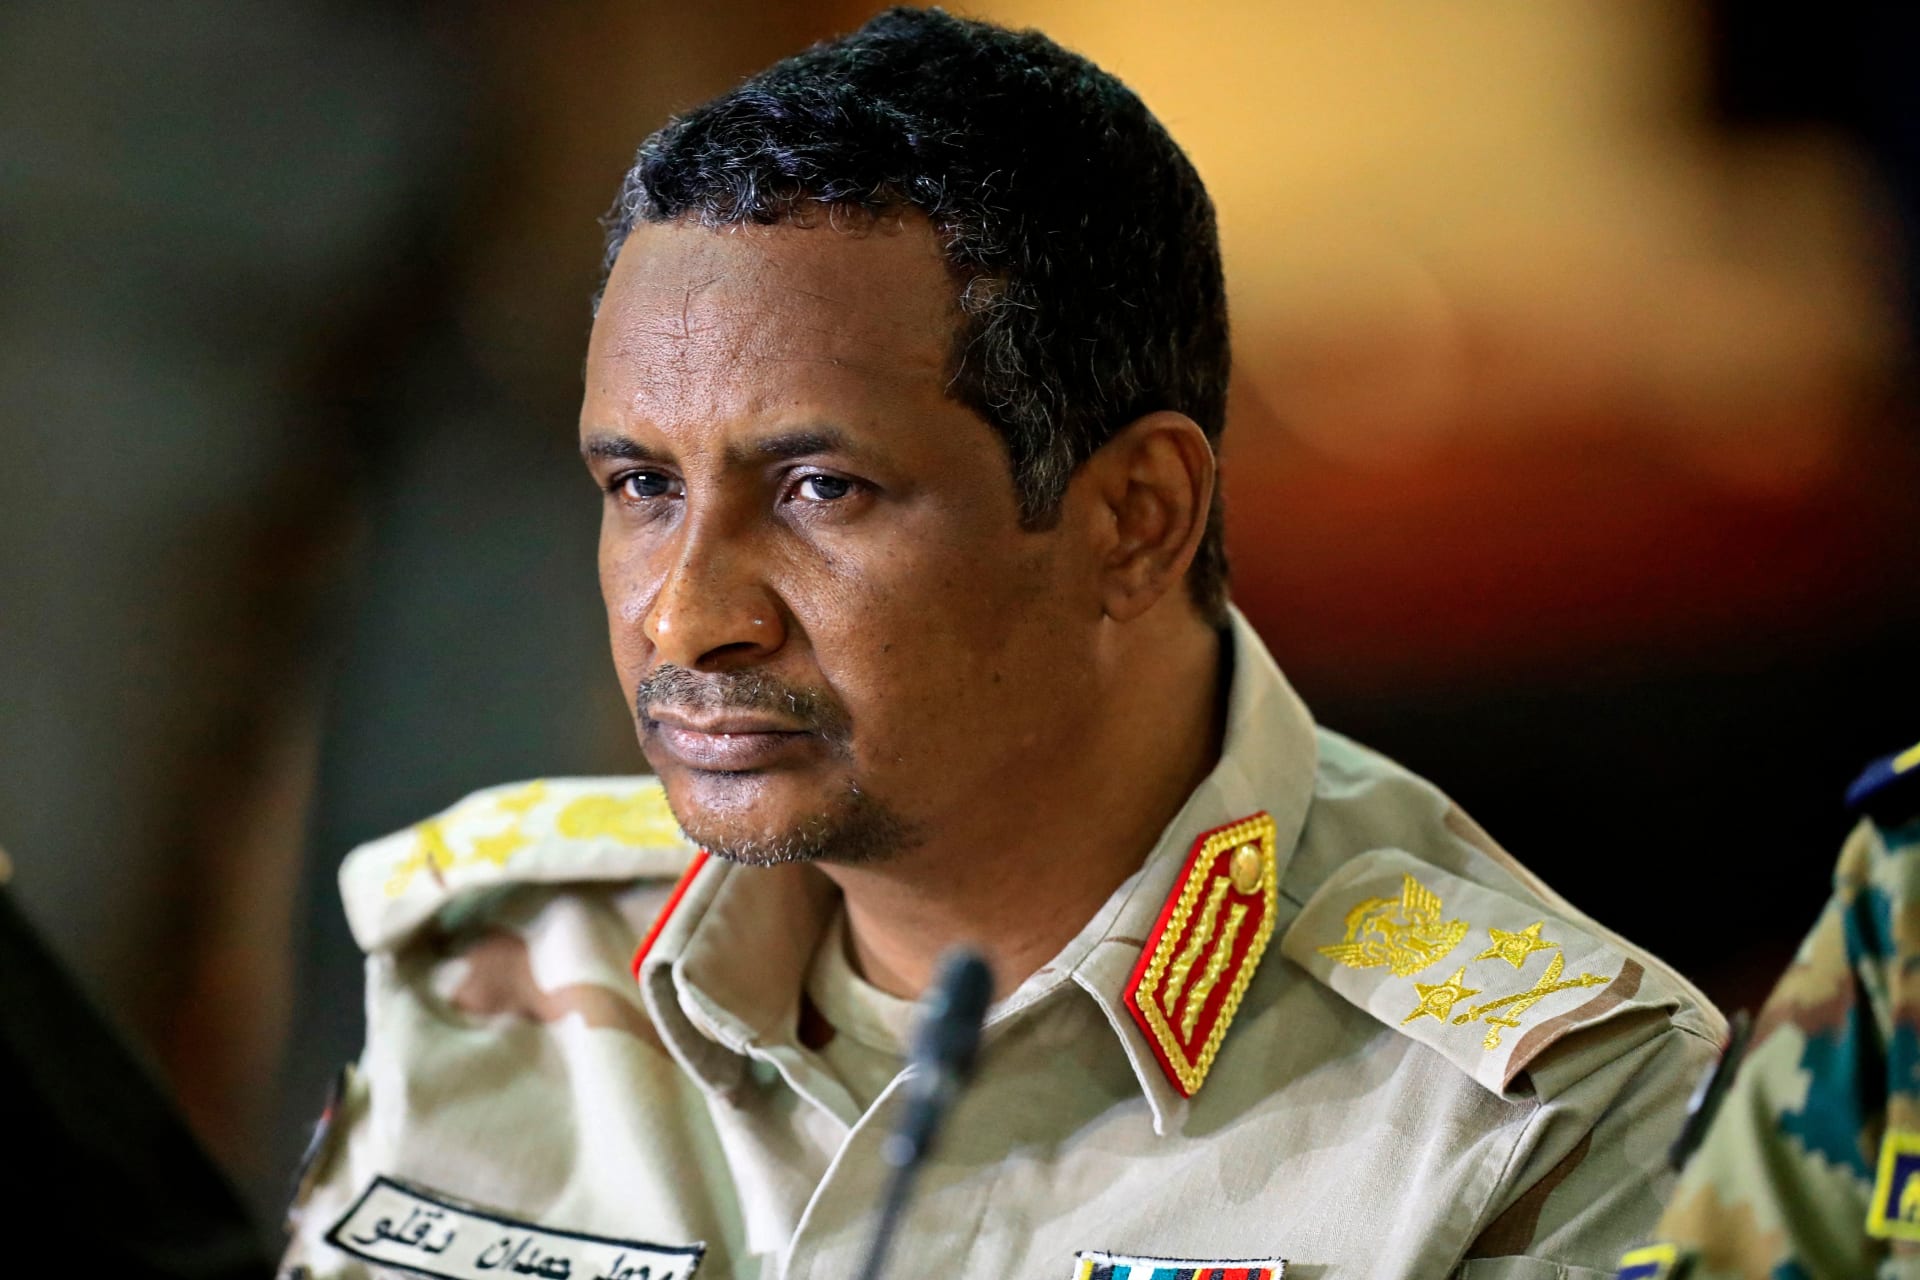 "حميدتي": أشكر حكومة مصر وشعبها لحرصها على أمن واستقرار السودان